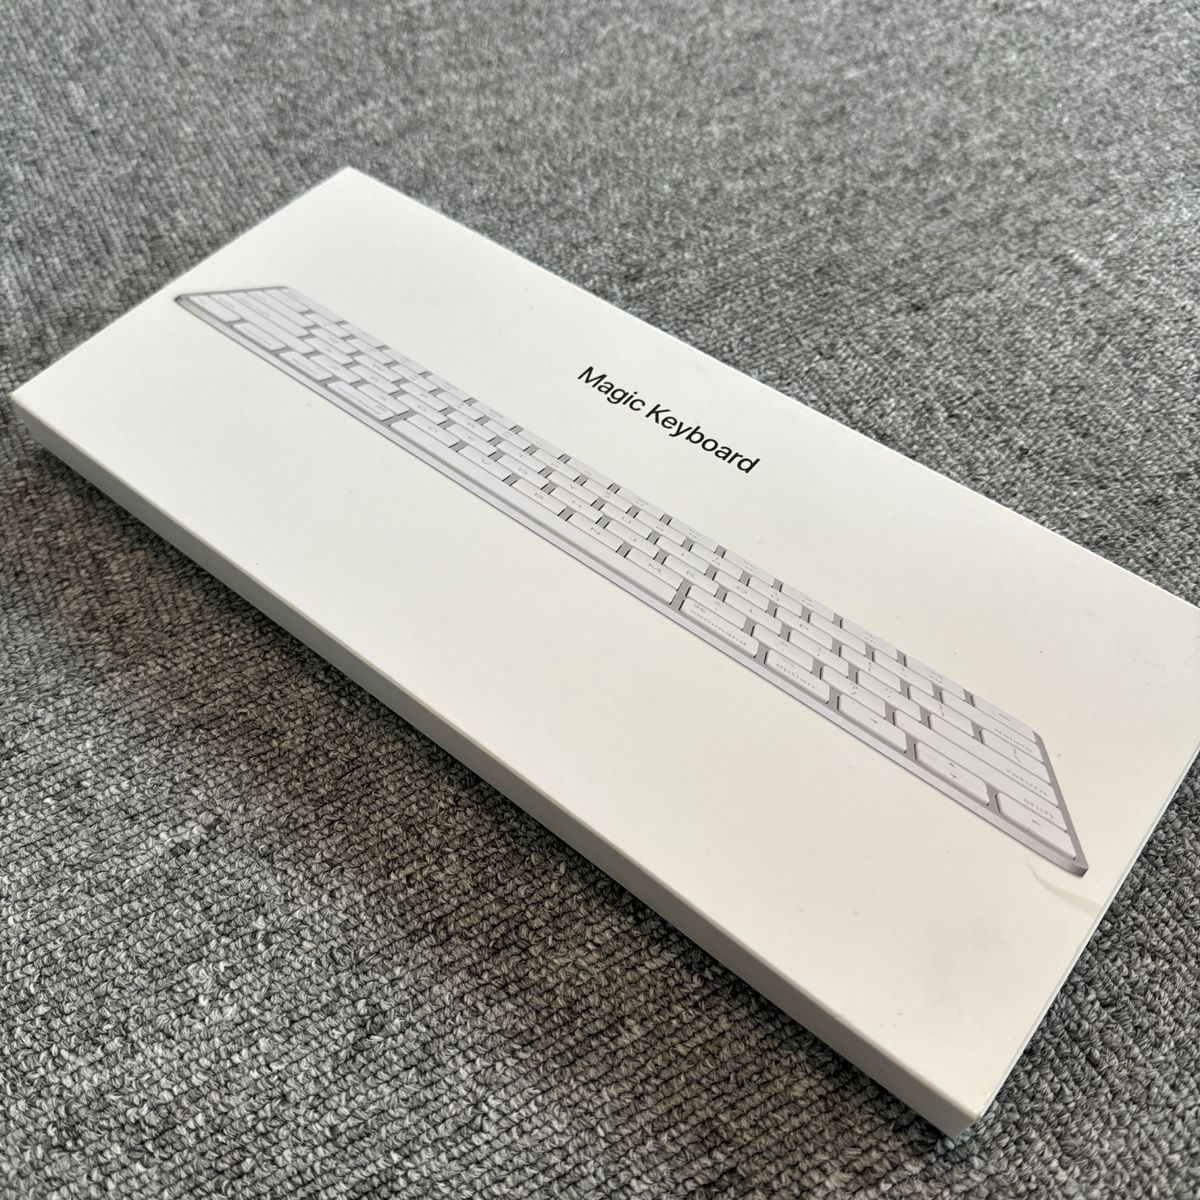 Apple magic Keyboard 木製カスタマイズ　Grovemadeキーボードトレイ　Woodwe スキン